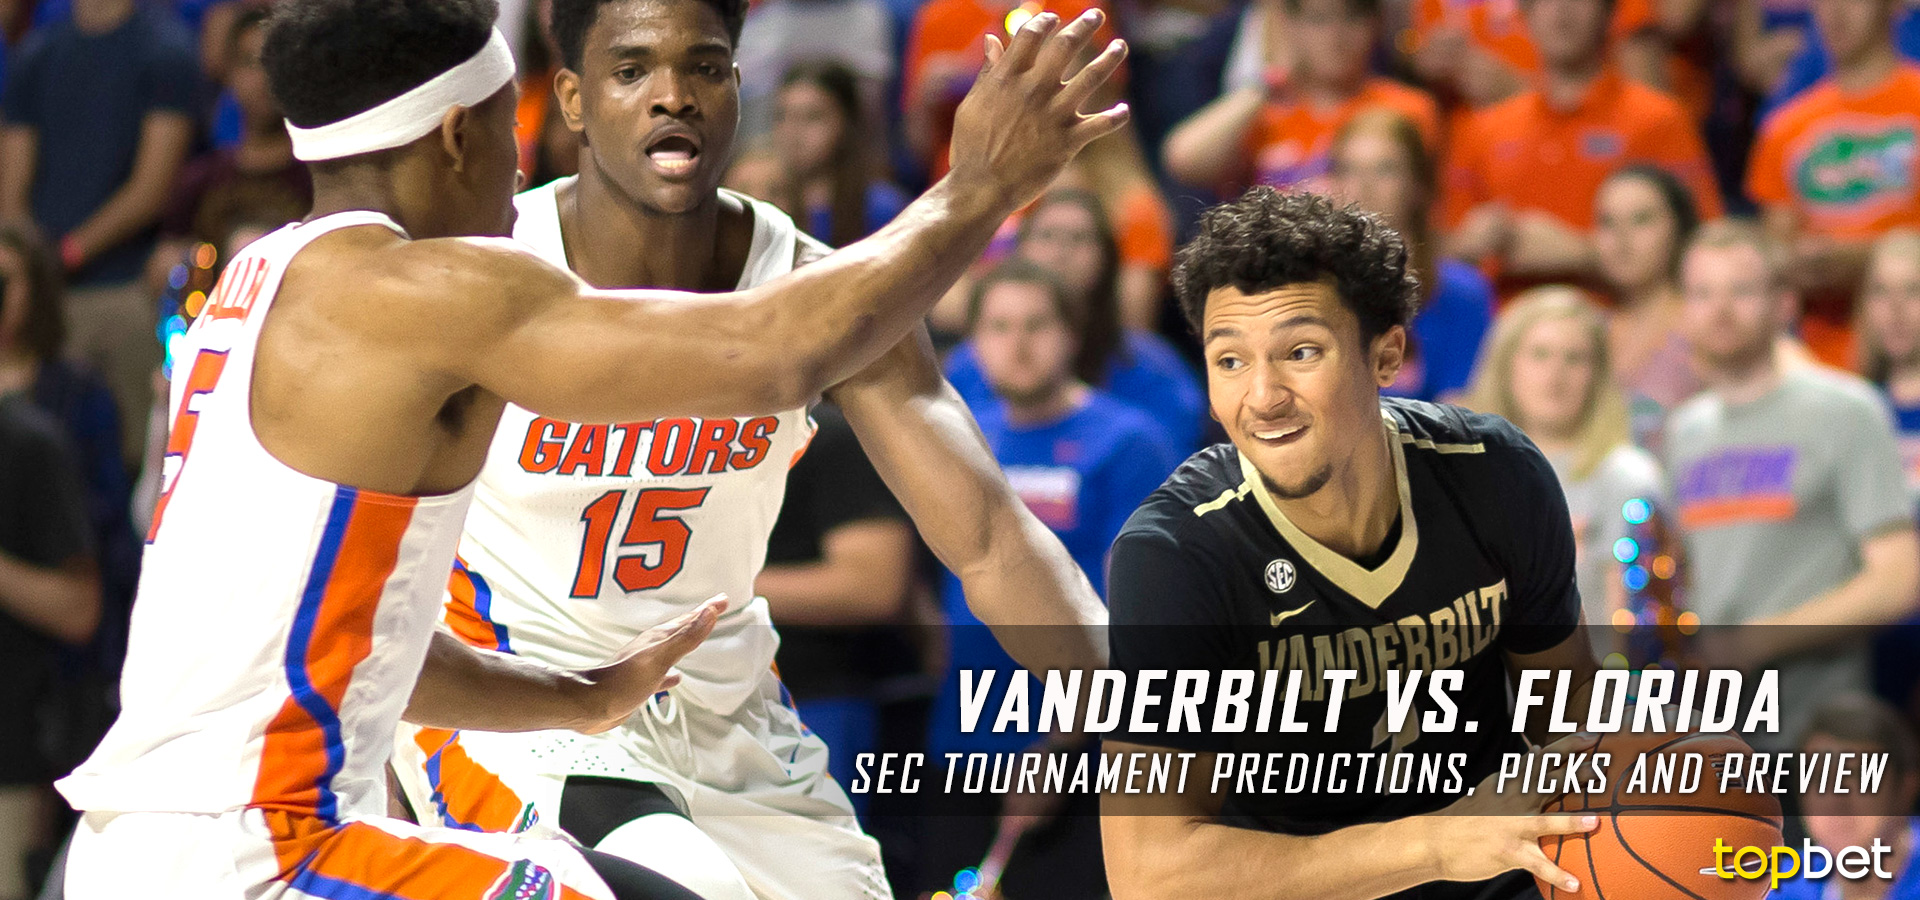 Vanderbilt vs Florida SEC Tournament Predictions and Preview